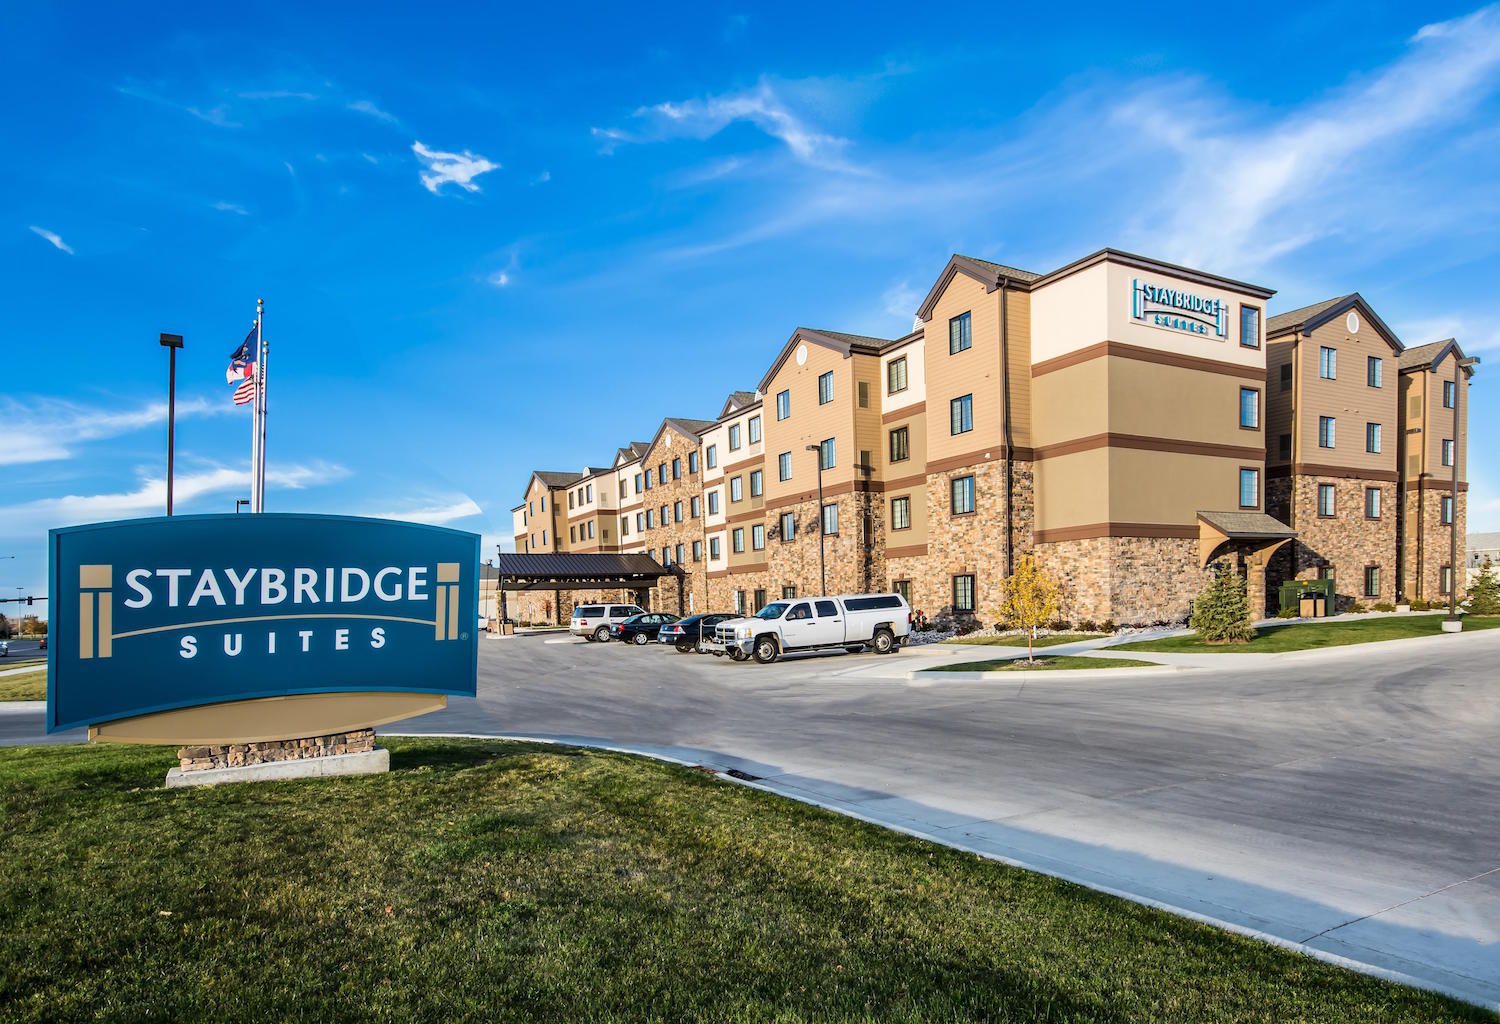 Photo of Staybridge Suites Grand Forks, Grand Forks, ND